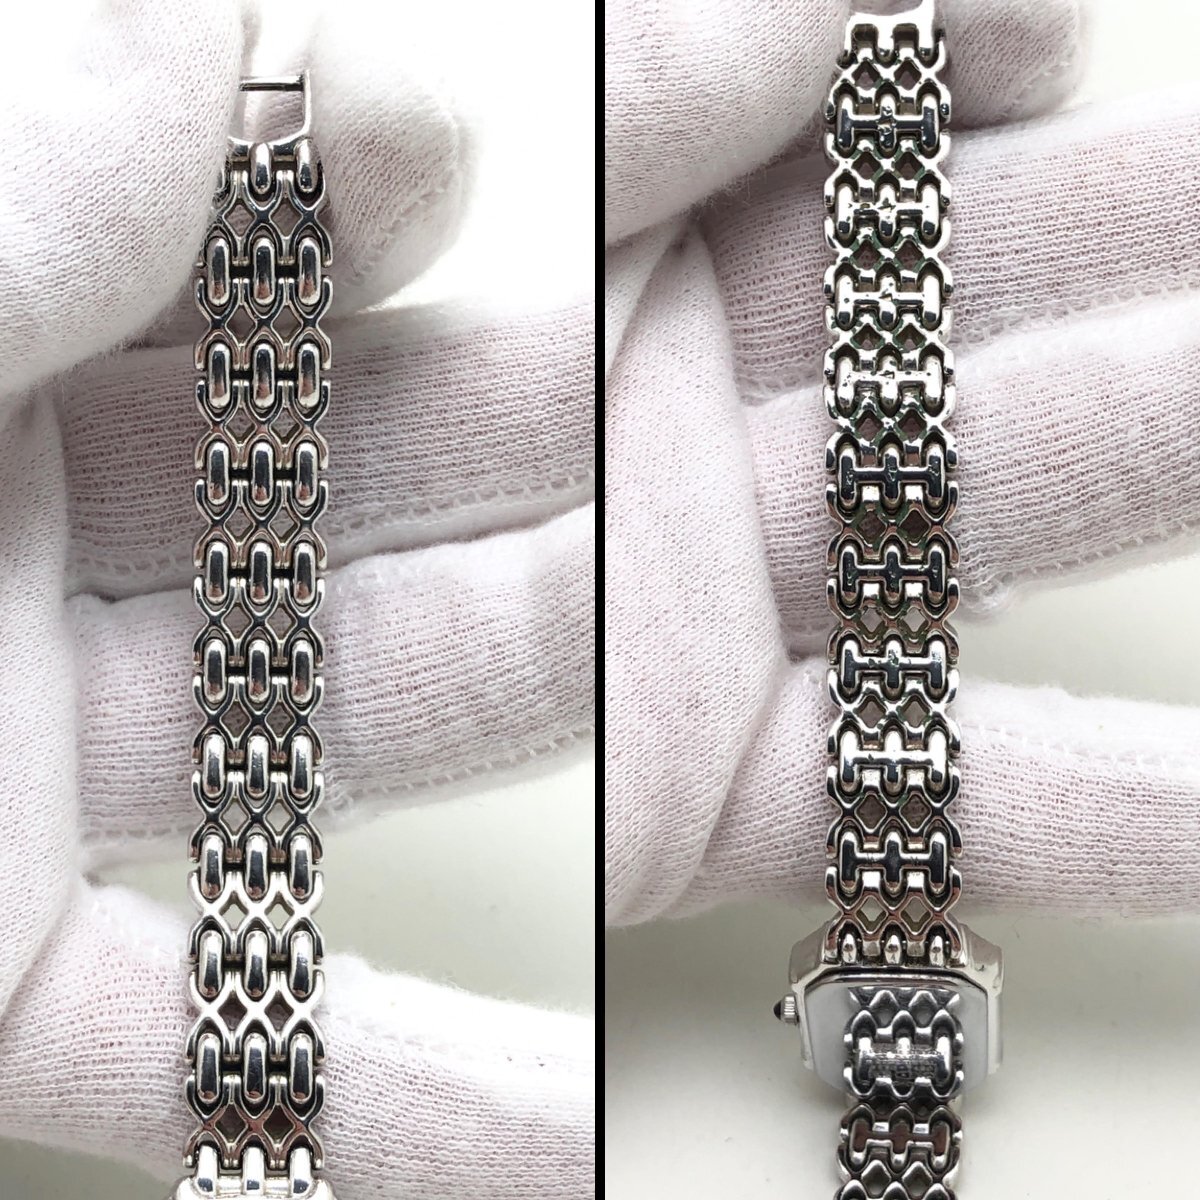  Seiko Exceline бриллиантовая оправа 2E20-7460 женские наручные часы розовый ракушка циферблат QZ SEIKO